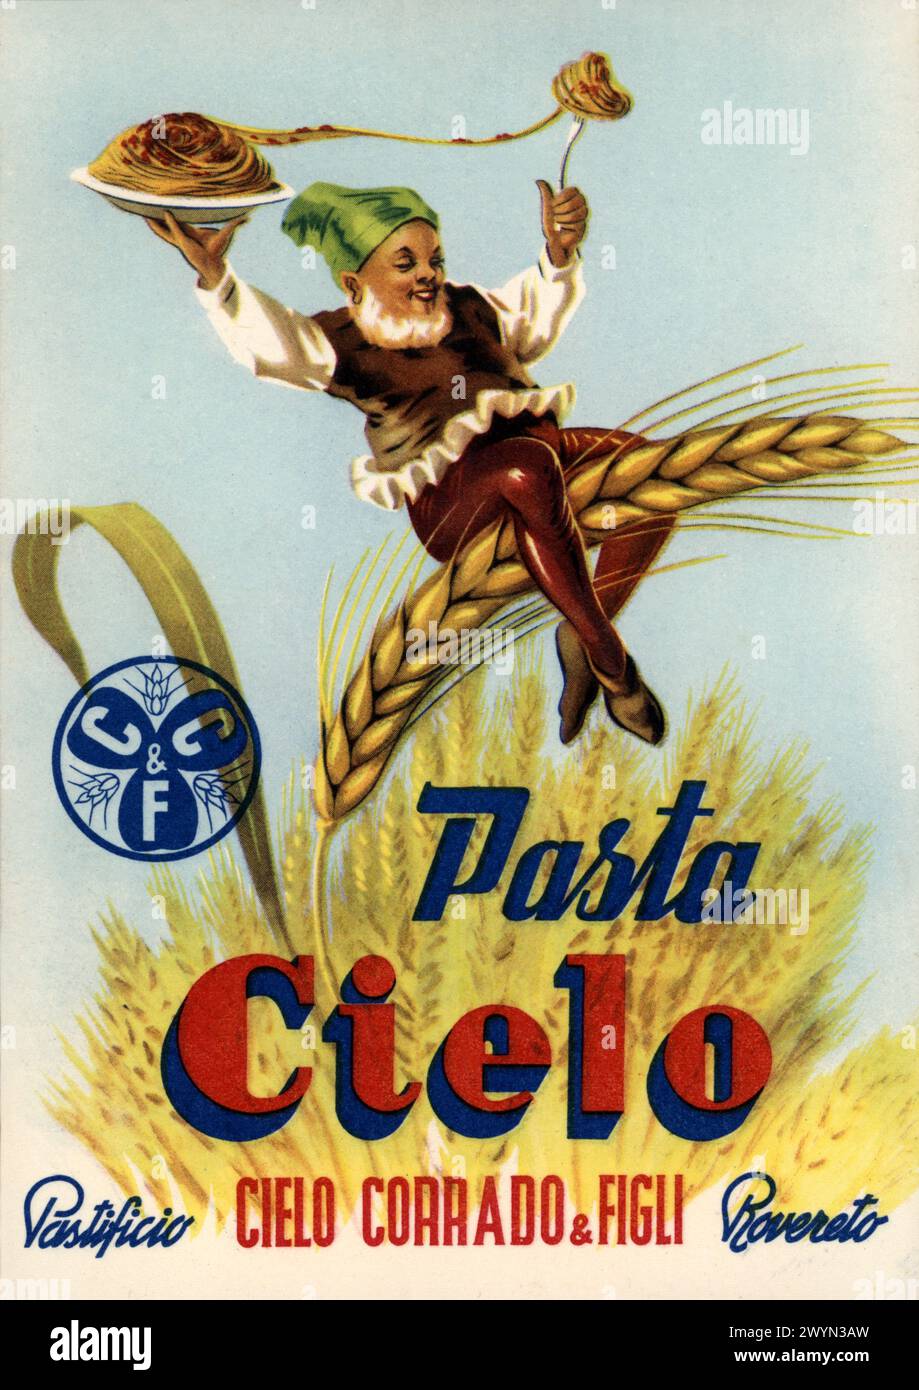 1955 c., Rovereto , Trento , TRENTINO , ITALIA : manifesto pubblicitario italiano per la pubblicità PASTA CIELO. Il Pastificio Corrado cielo & figli è stato un rinomato pastificio della città di Rovereto (Trento). Opera d'arte di un illustratore sconosciuto . - PASTIFICIO - SPAGHETTI - SPIGA DI GRANO - ORECCHIE DI MAIS - FOLLETTO - ELF - IMP - ELFIN - PIXIE - GNOMO - GNOME - GOBLIN - GREMLIN - PIXY - BOGY - SPRITE - PUBBLICITÀ - ILLUSTRAZIONE - ANNI CINQUANTA - 50 '50 - Pubblicità - annuncio pubblicitario - reclame - pubblicità - poster - industria - industria - ALIMENTO - ALIMENTI Foto Stock